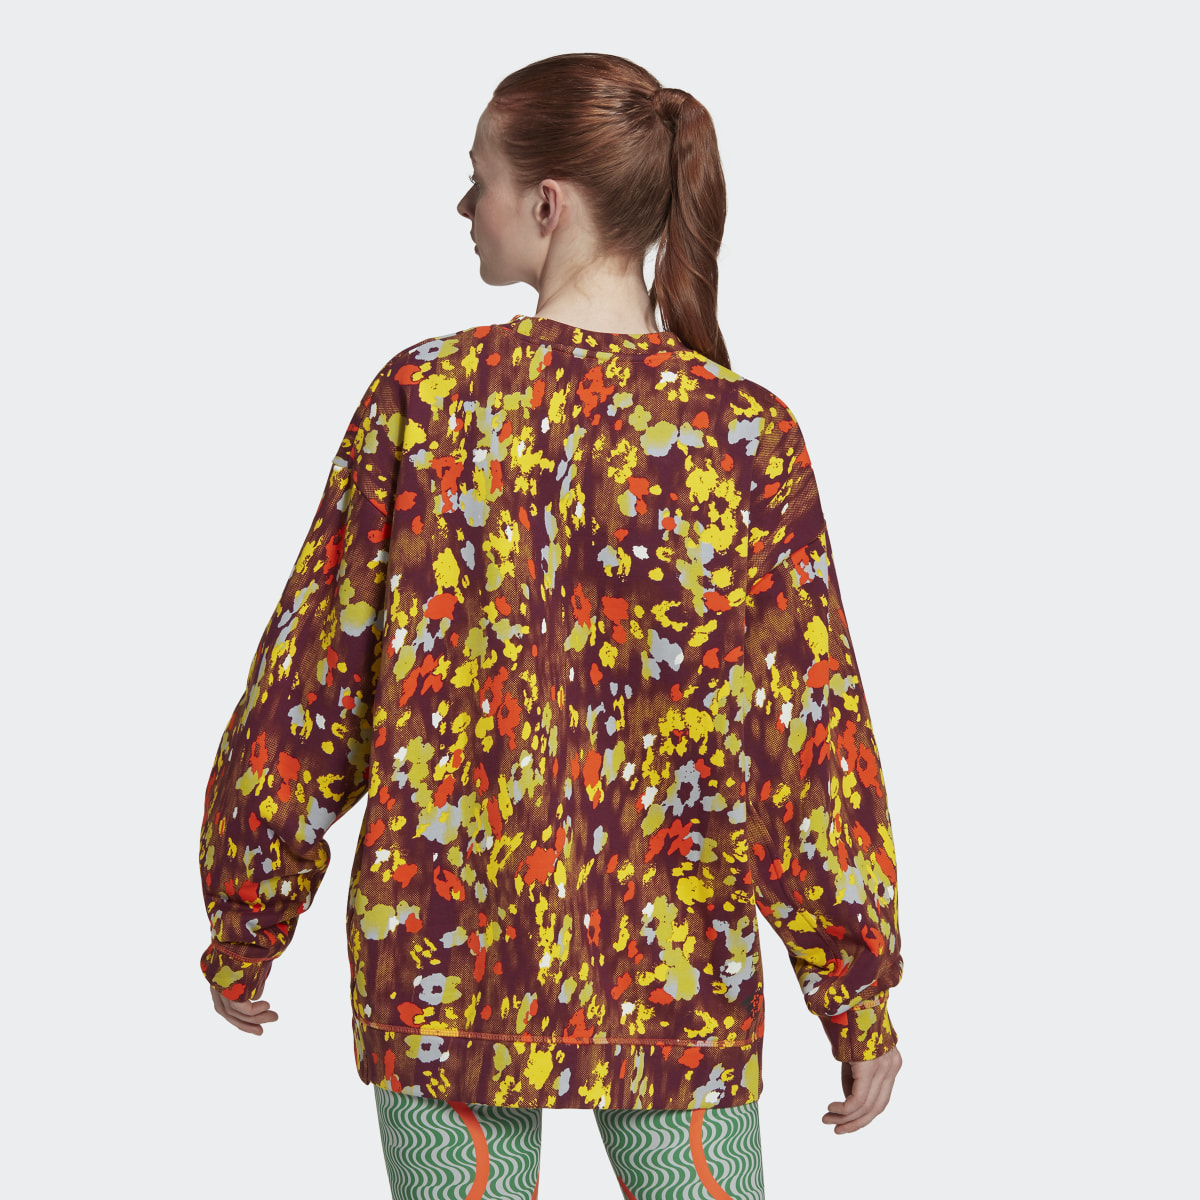 Adidas by Stella McCartney Floral Print Sweatshirt. 3